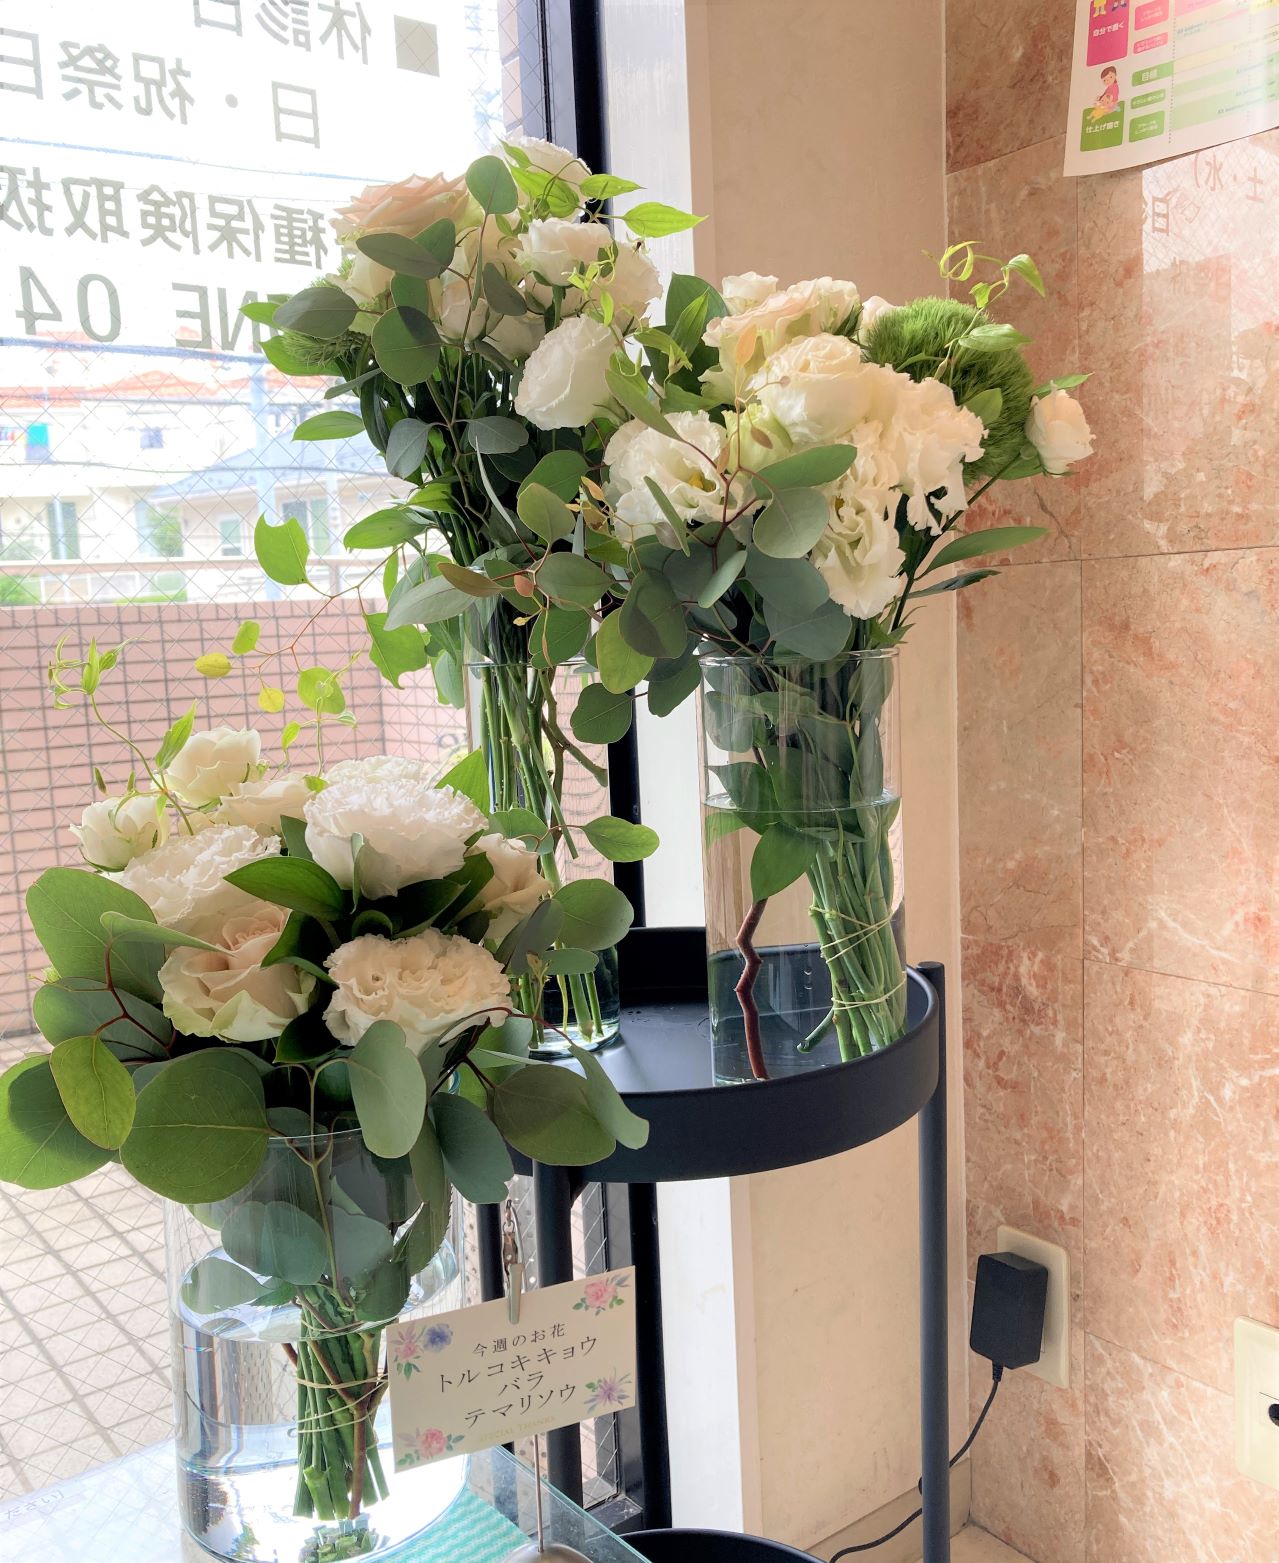 横浜市中区の歯医者さんへ受付装花を配達しました。【横浜花屋の花束・スタンド花・胡蝶蘭・バルーン・アレンジメント配達事例924】